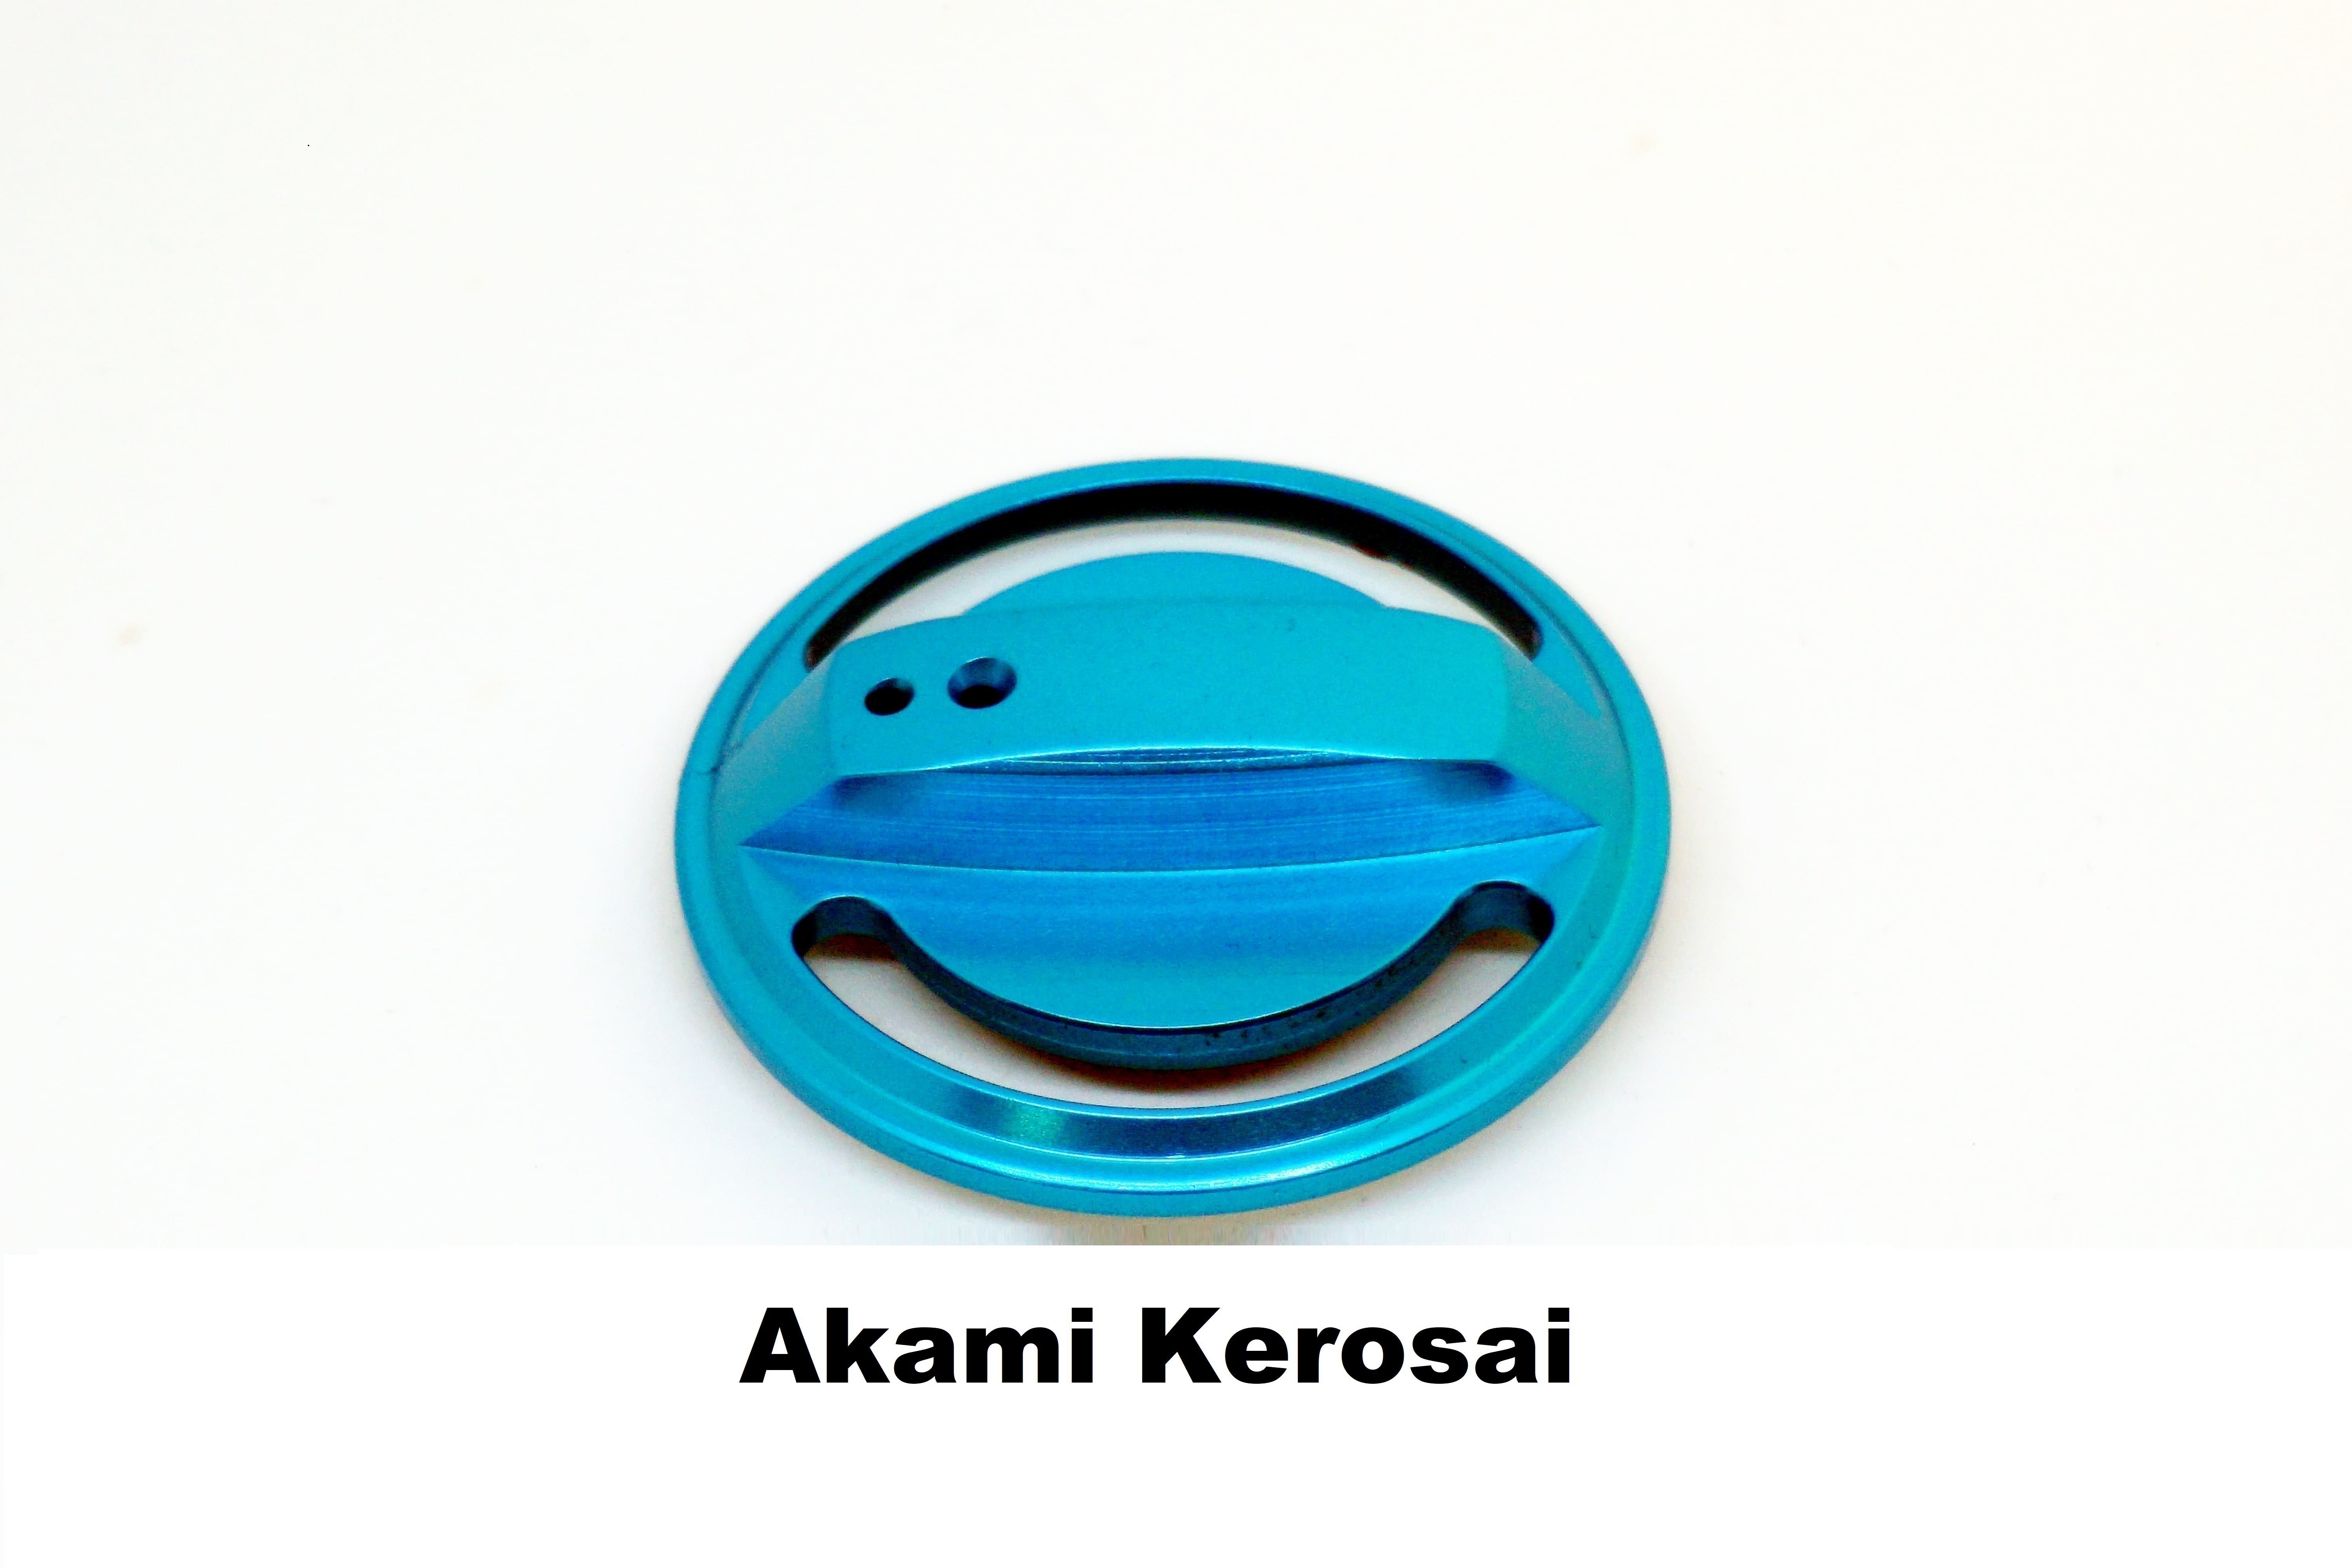 Drag Knob for Akami Kerosai